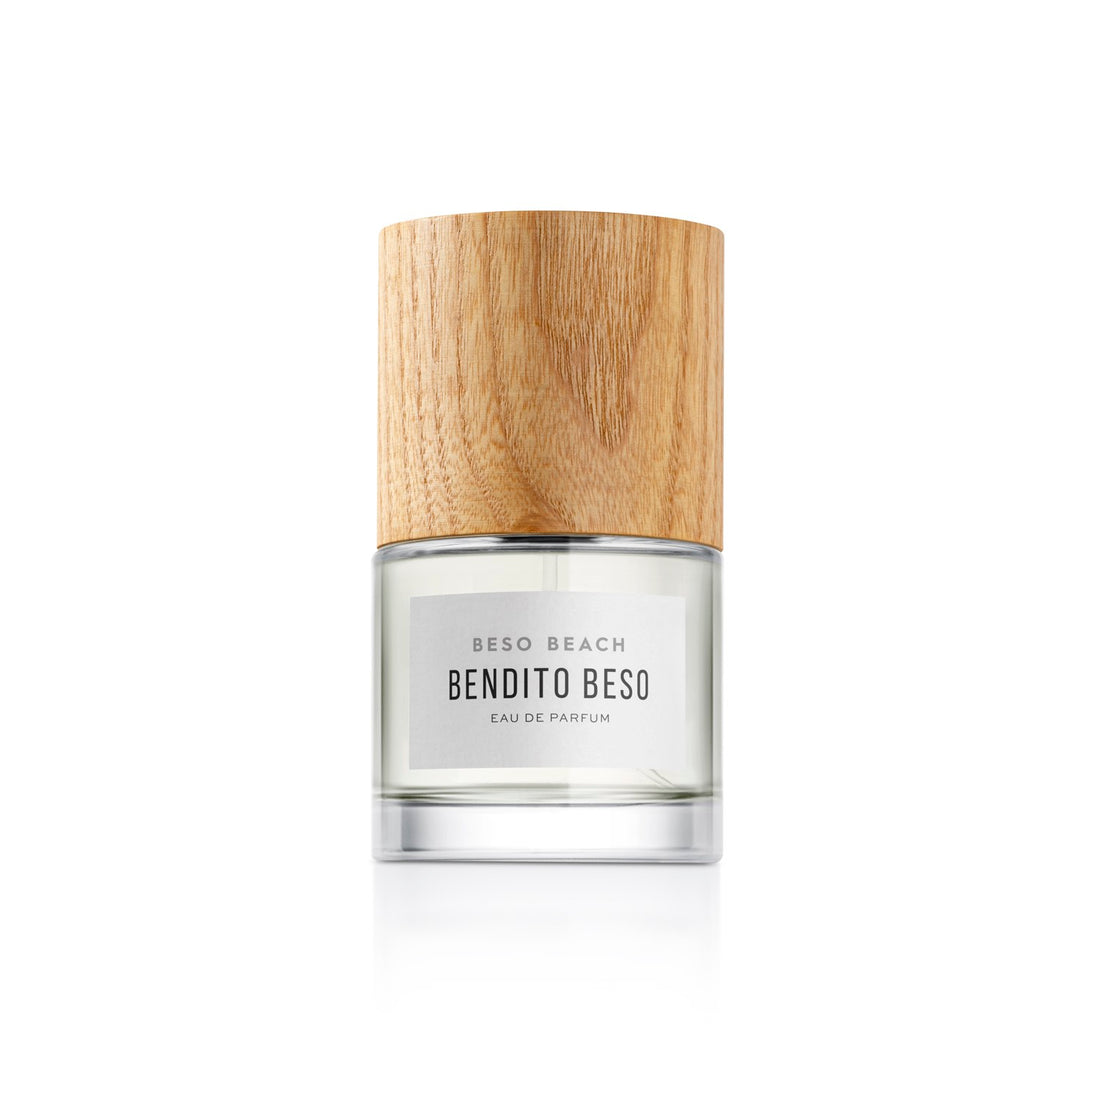 BENDITO BESO, Eau de Parfum 30 ml